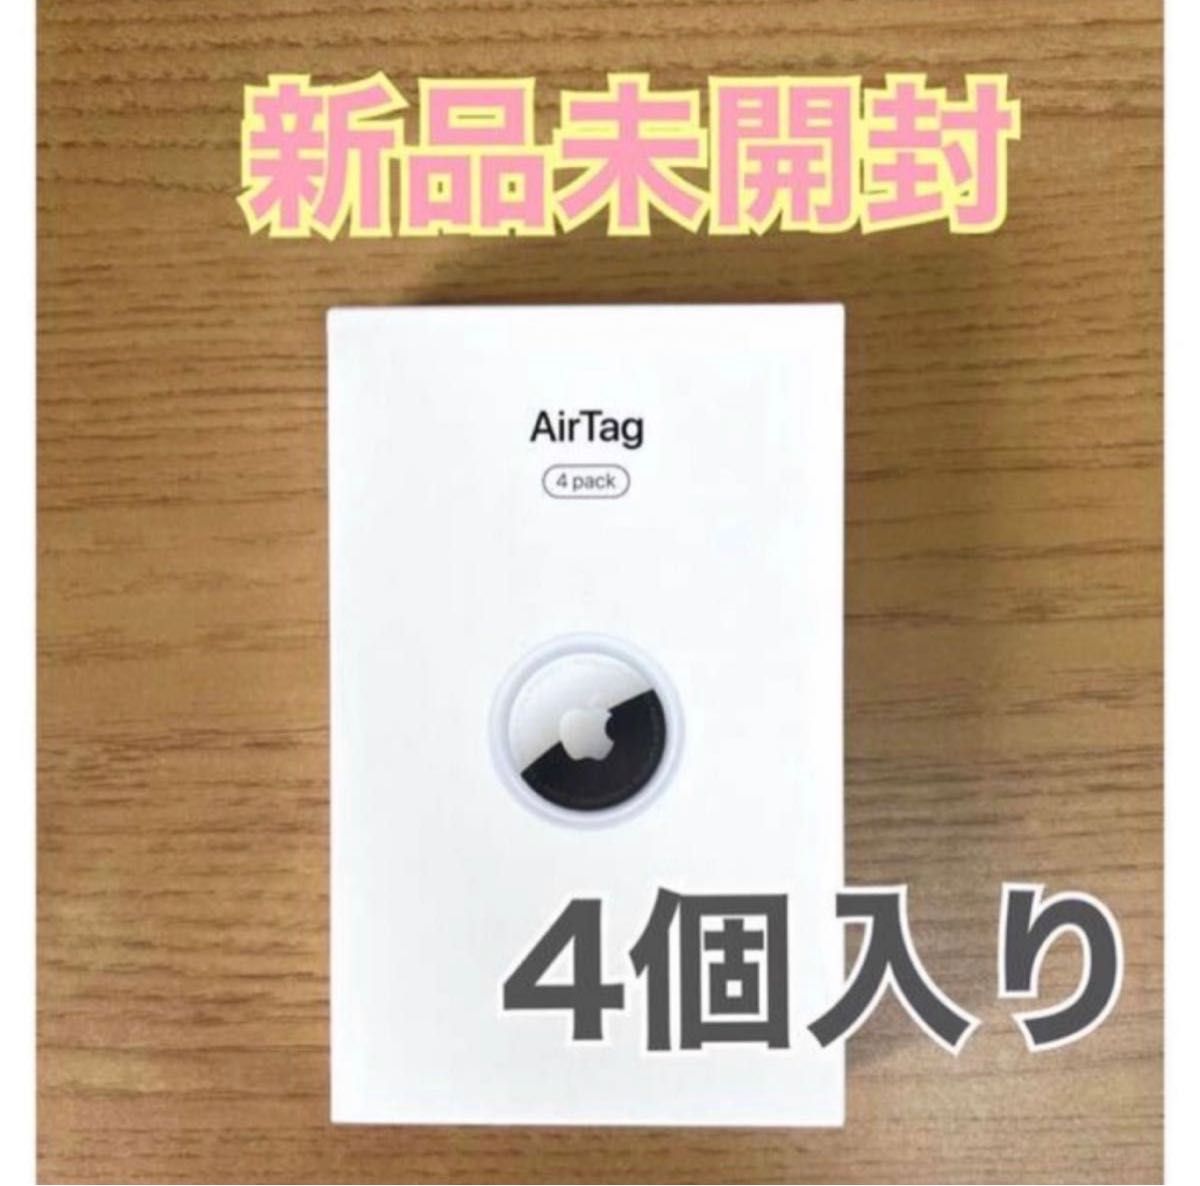 新品未開封】AirTag エアタグ4パック apple アップル 純正 本体